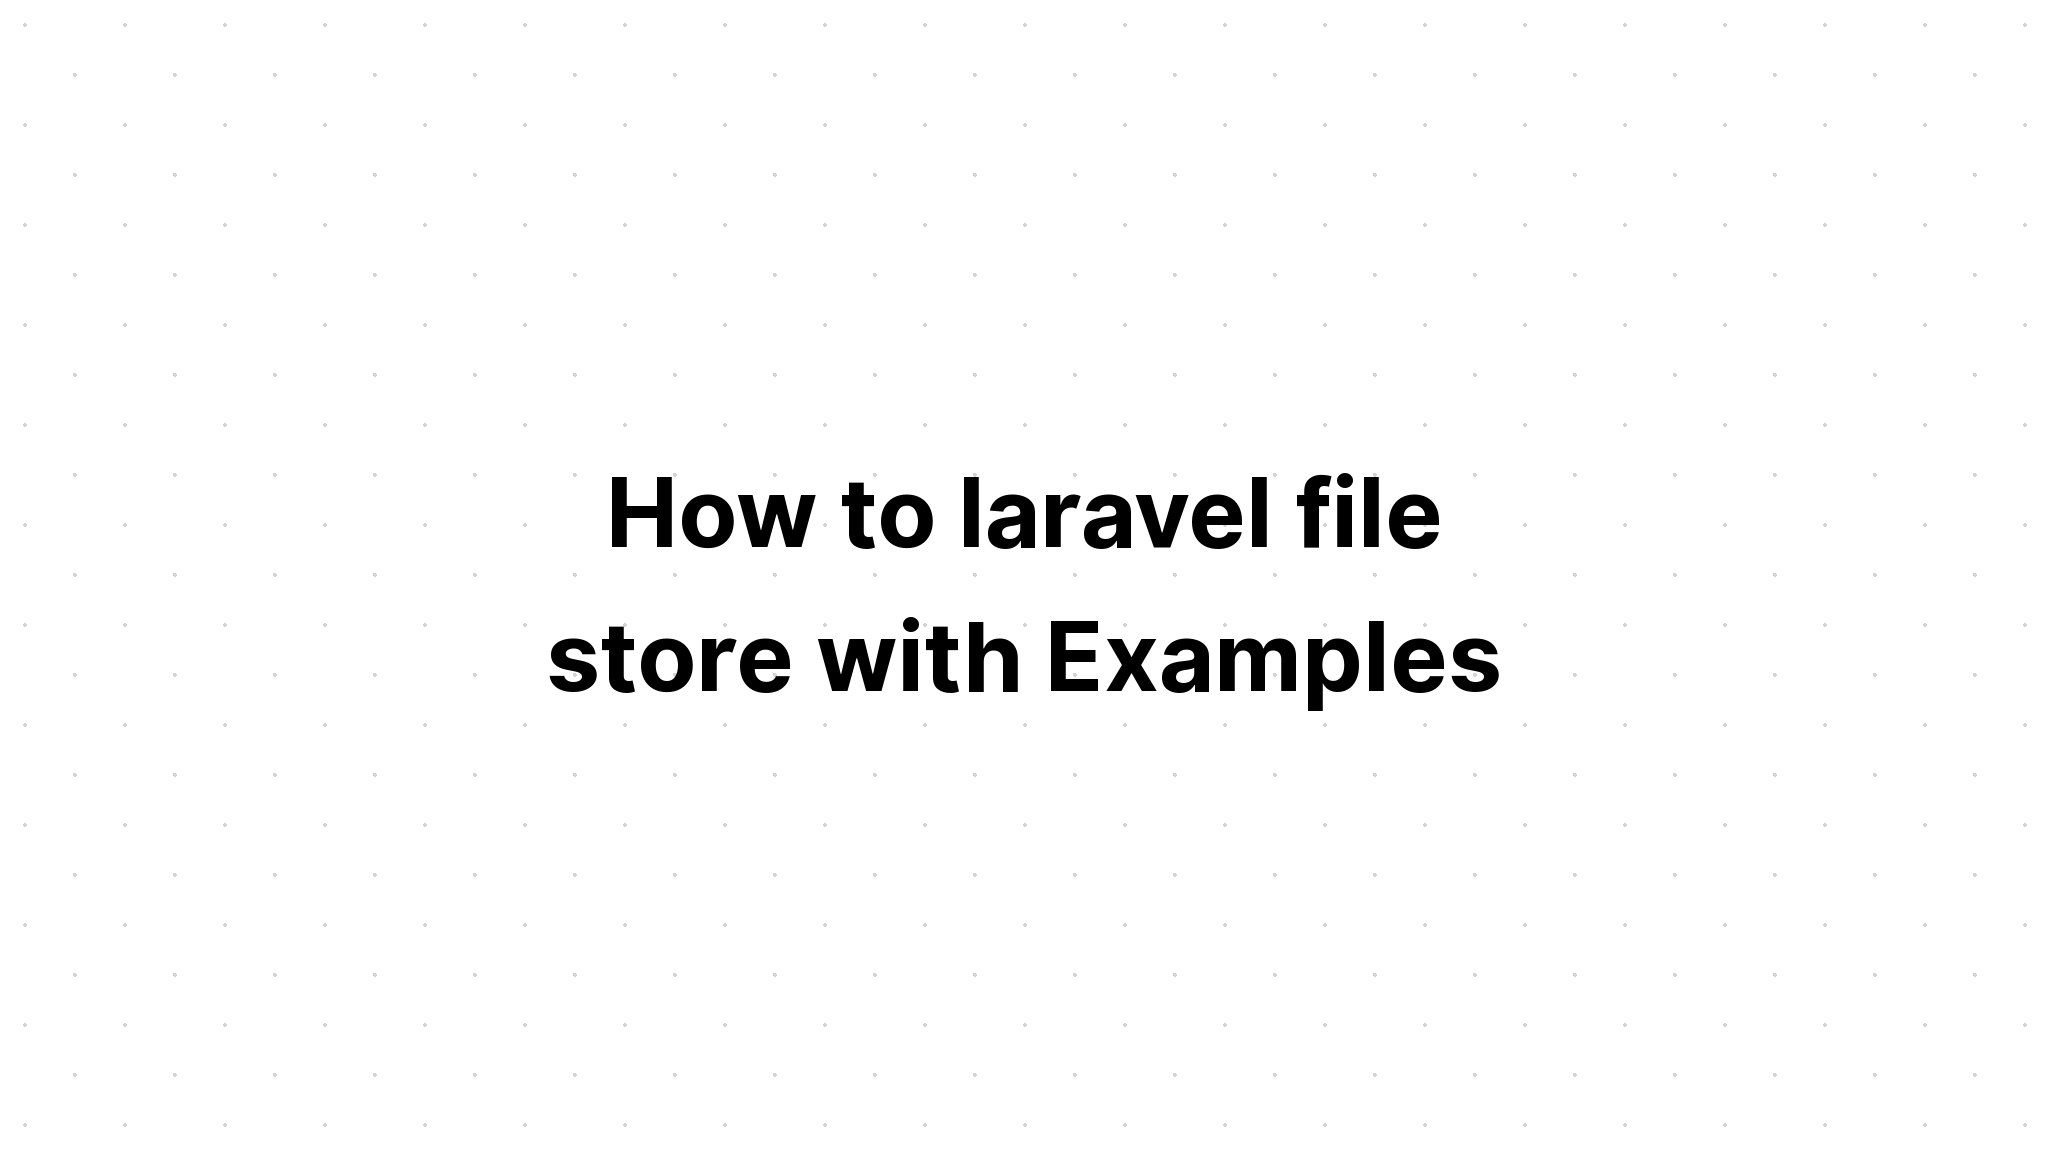 Cách lưu trữ tệp laravel với các ví dụ